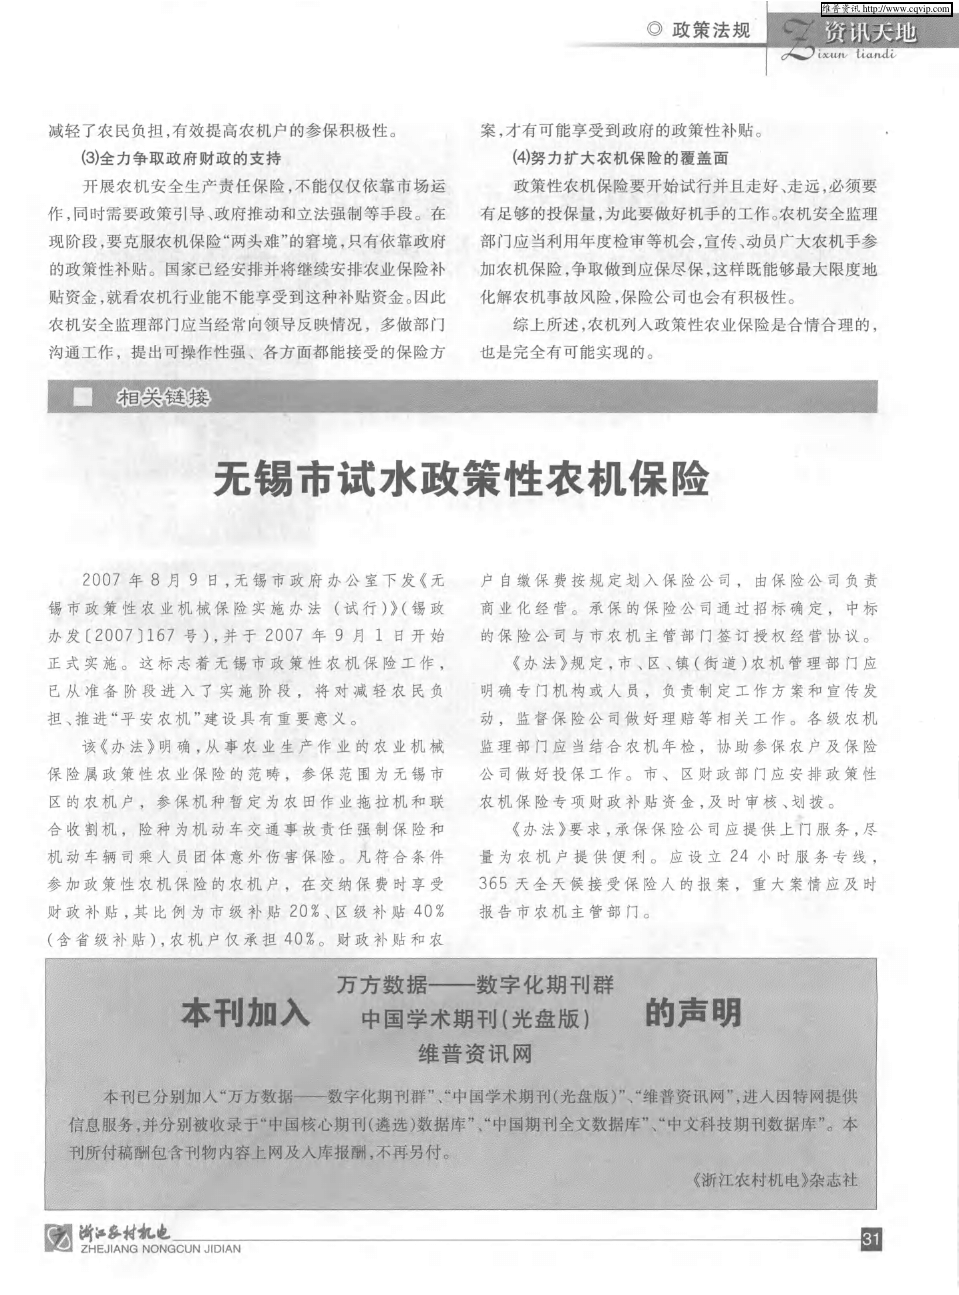 本刊加入万方数据——数字化期刊群中国学术期刊(光盘版)维普资讯网的声明